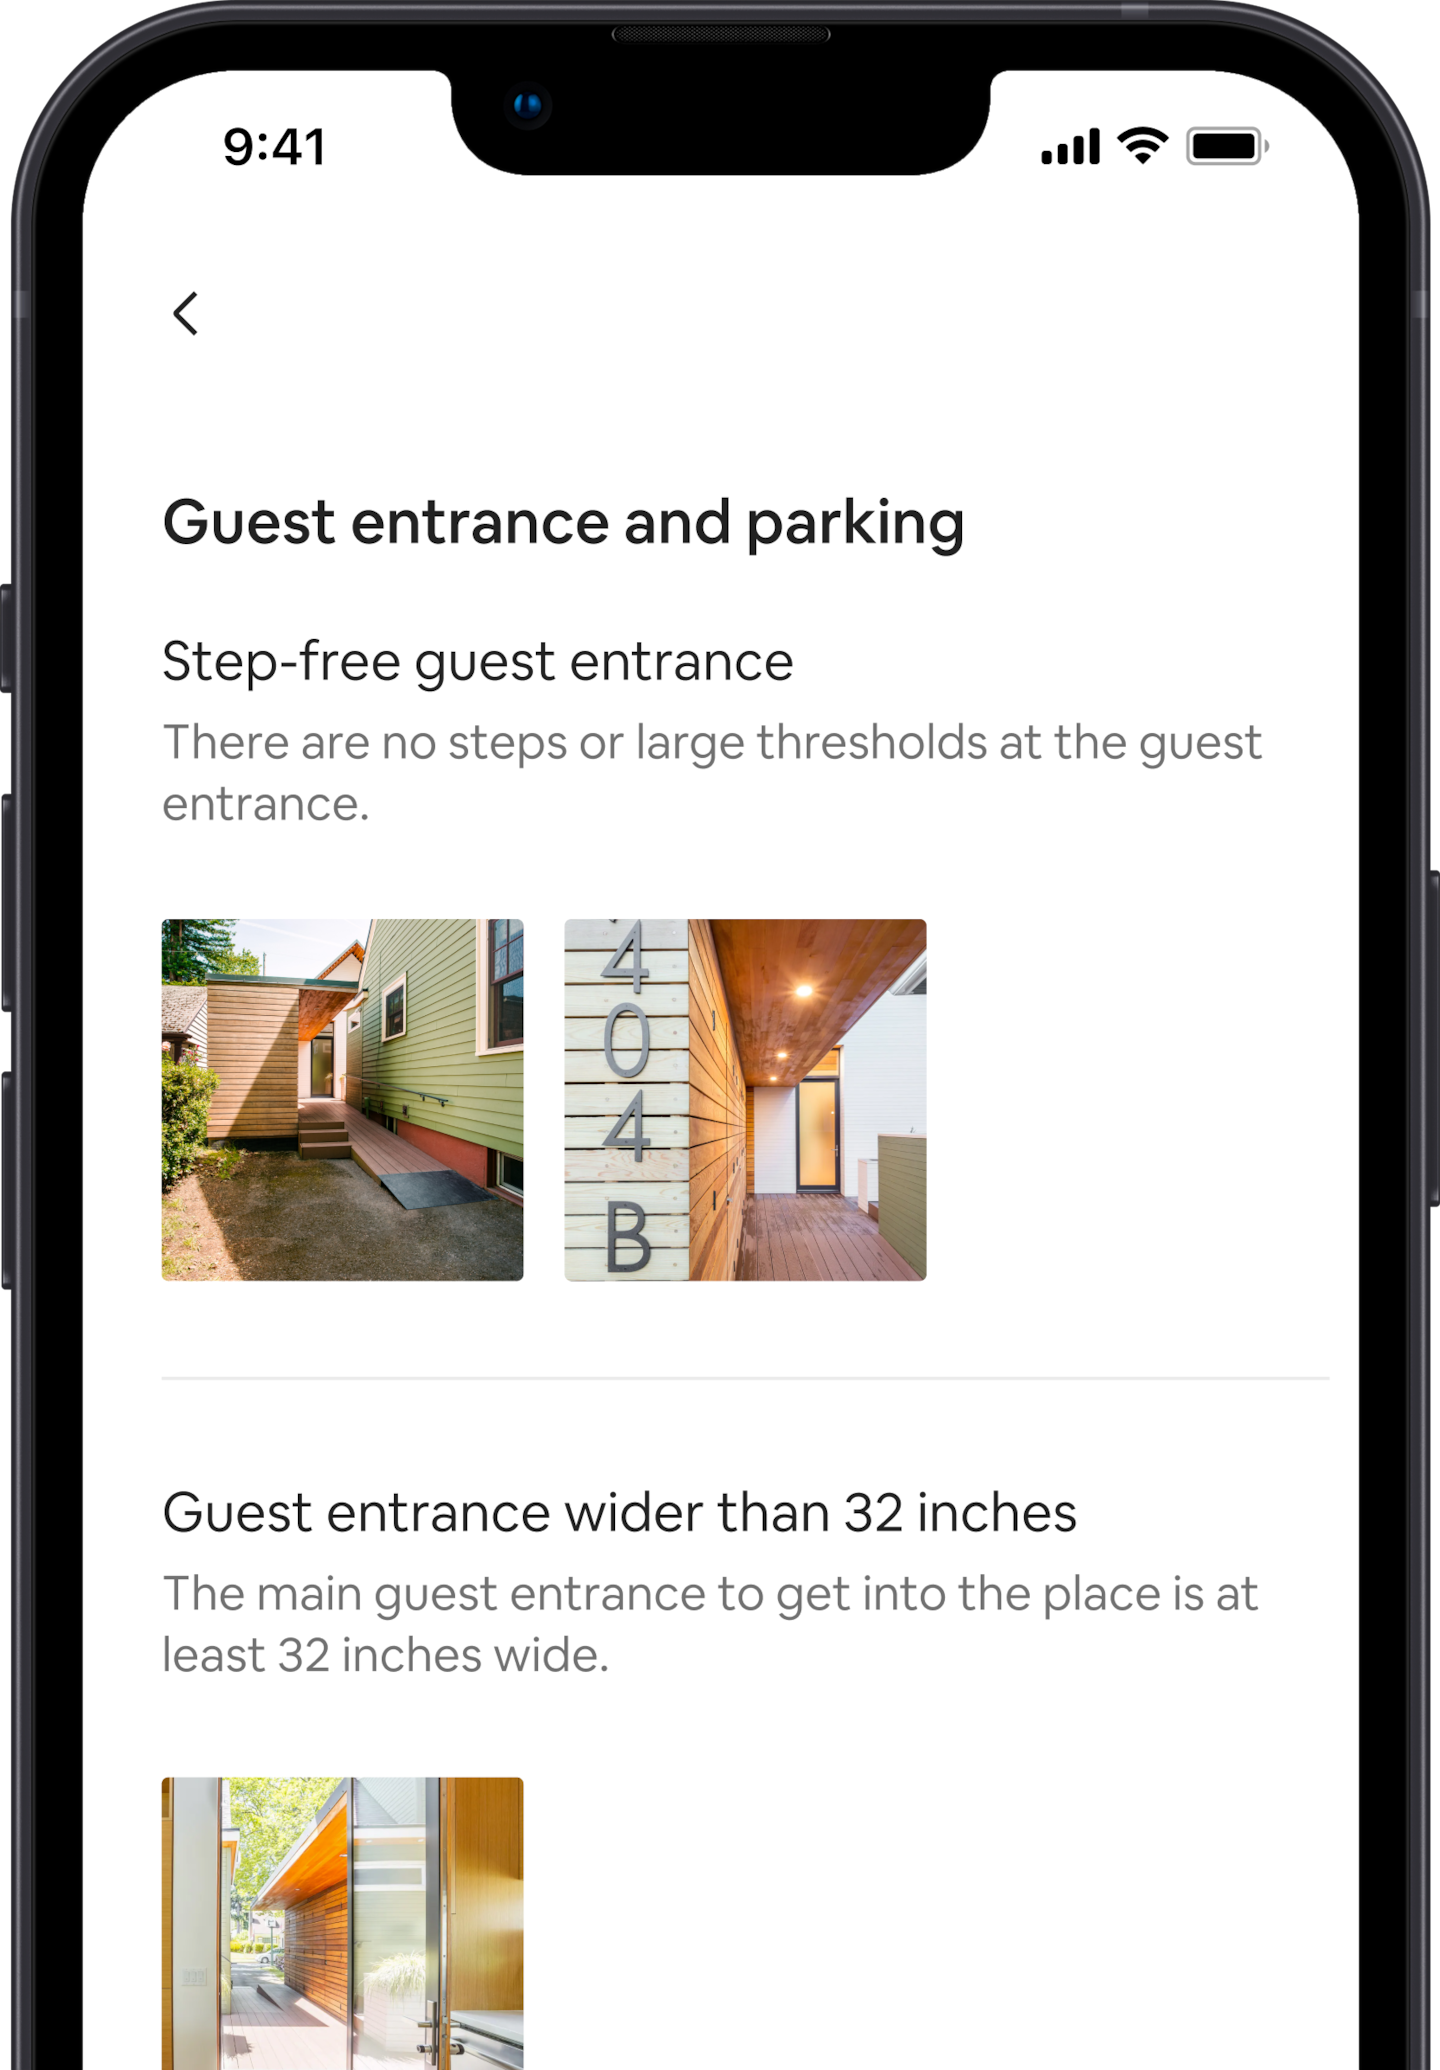 Bir cep telefonu ekranında bir Airbnb kaydına ilişkin bir grup erişilebilirlik özelliği görülüyor. İlk özellik "basamaksız misafir girişi" ve altında da bu özelliği gösteren resimler var. Onun altında "81 cm'den geniş misafir girişi" şeklinde bir başka erişilebilirlik özelliği, yine altında resmiyle birlikte gösteriliyor.